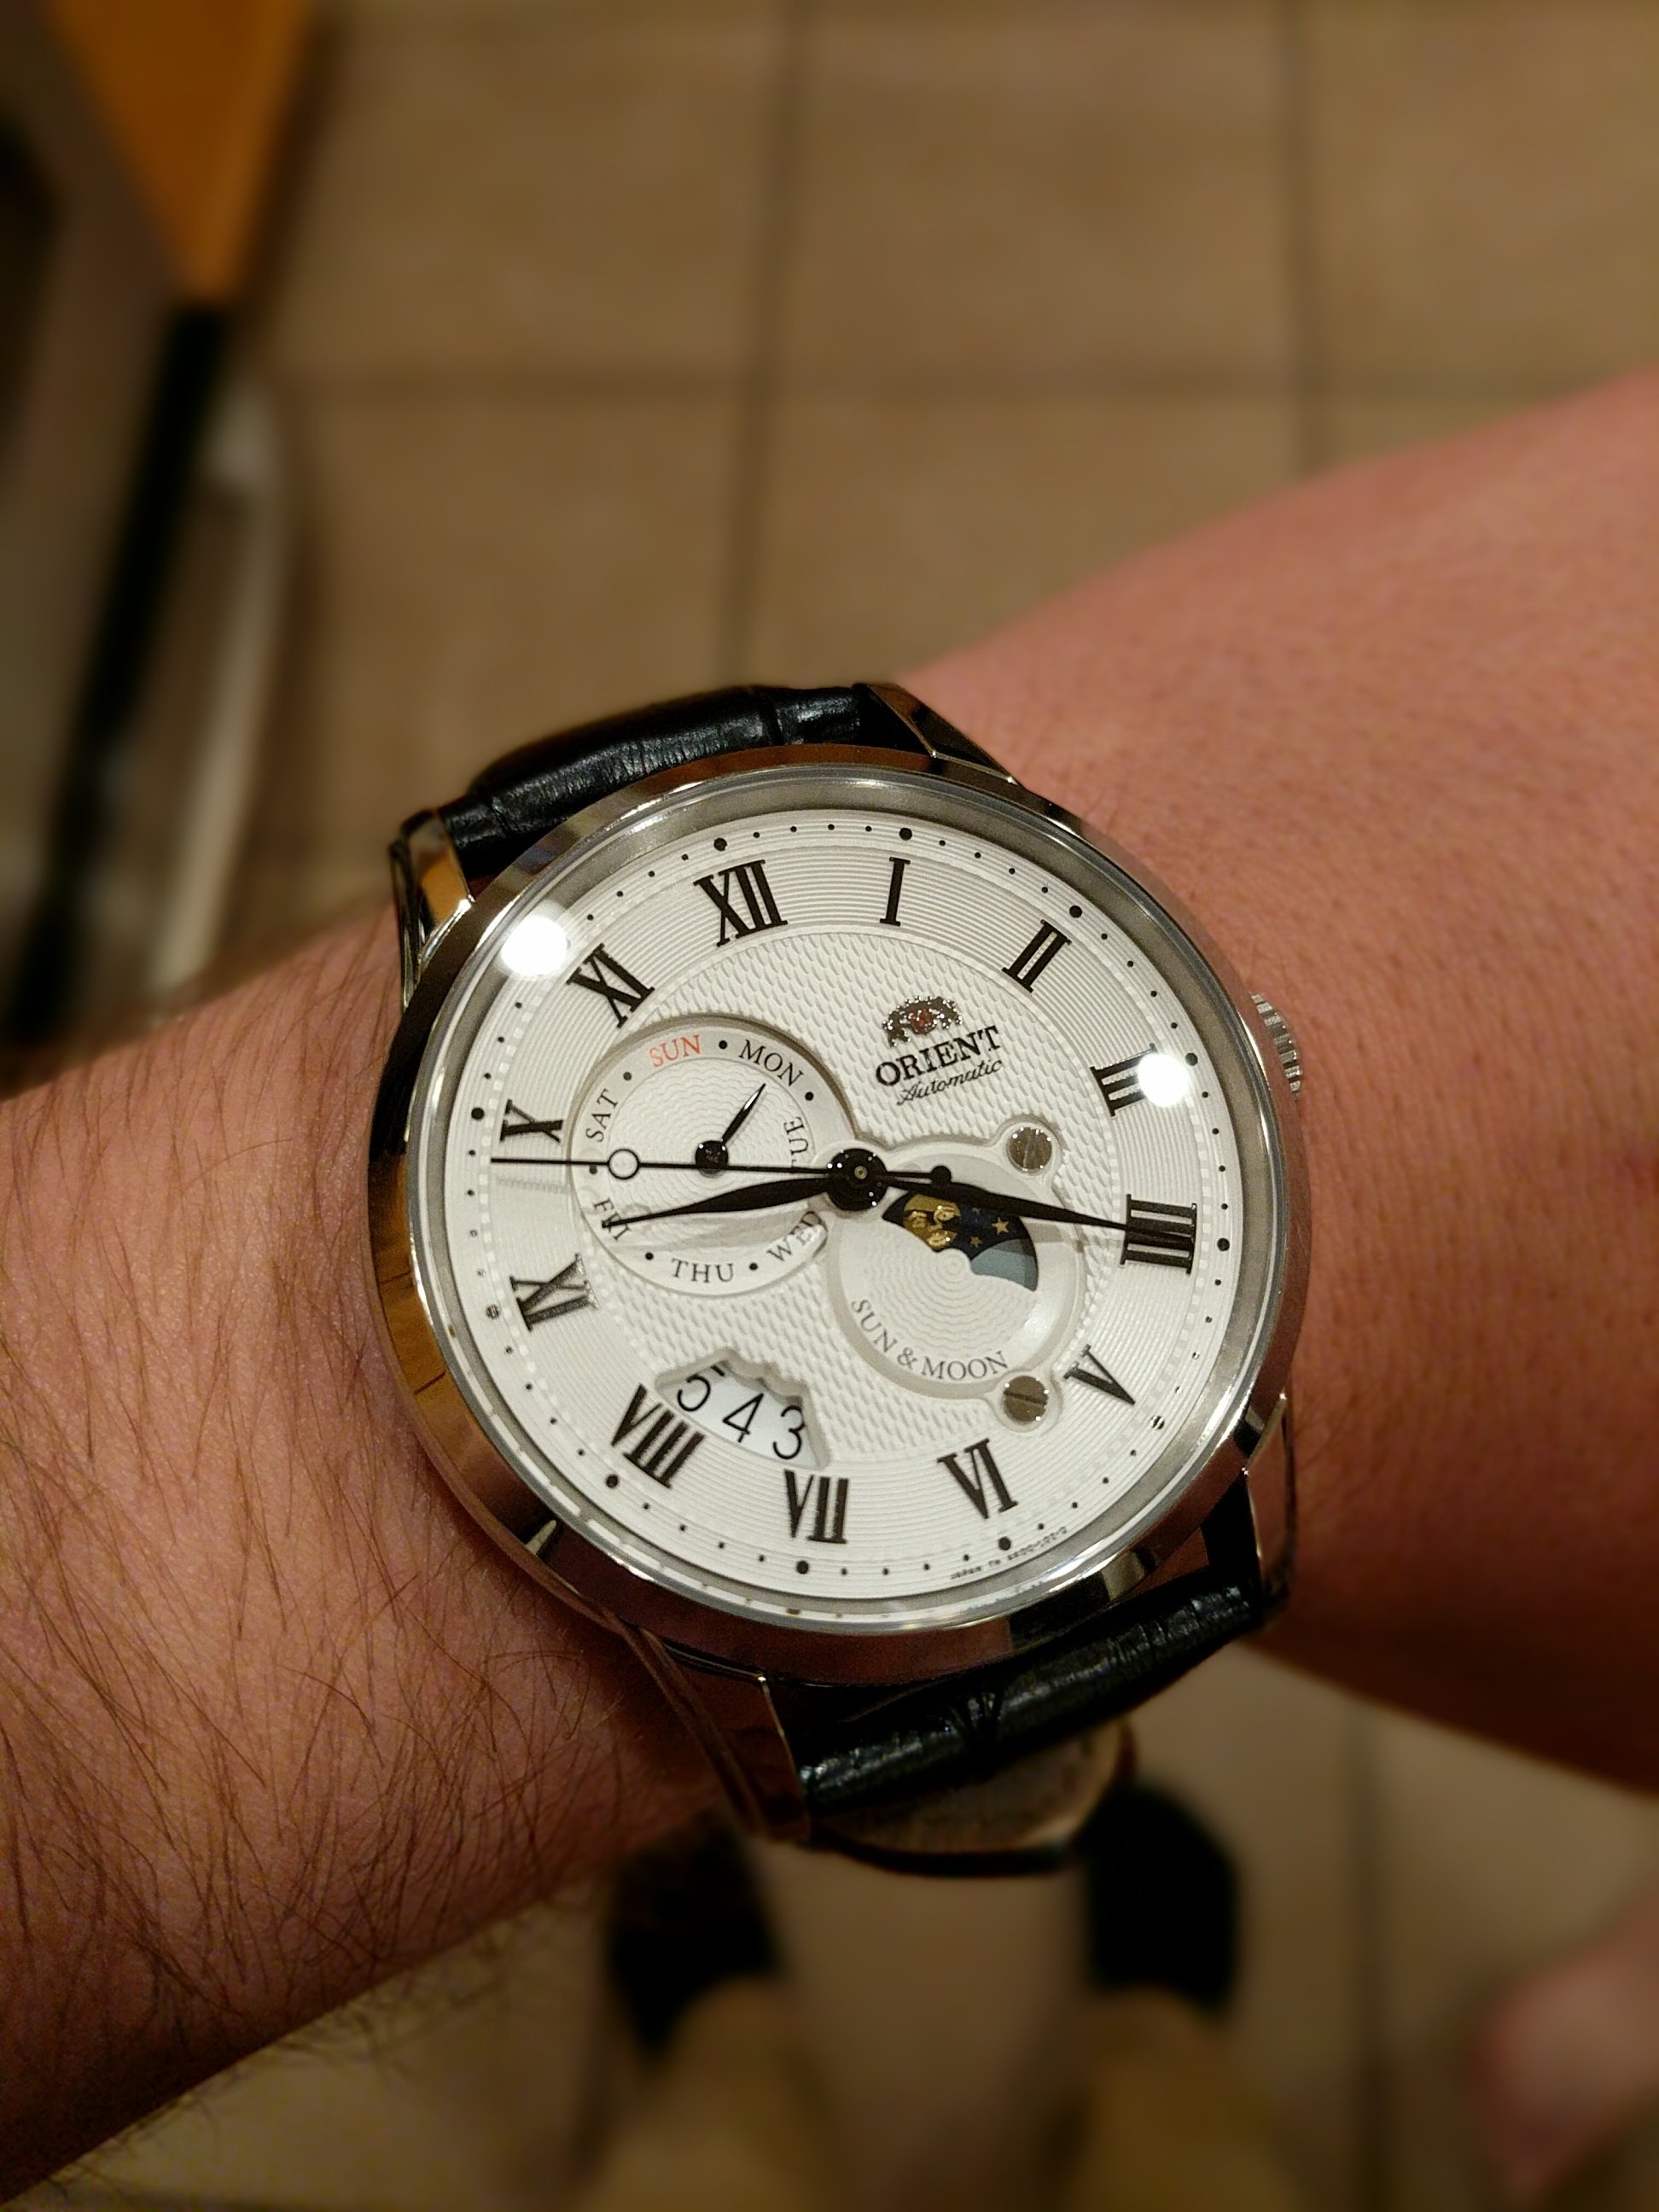 もらって嬉しい出産祝い時計オリエント サン&ムーン3、僕の最初の自動巻き時計